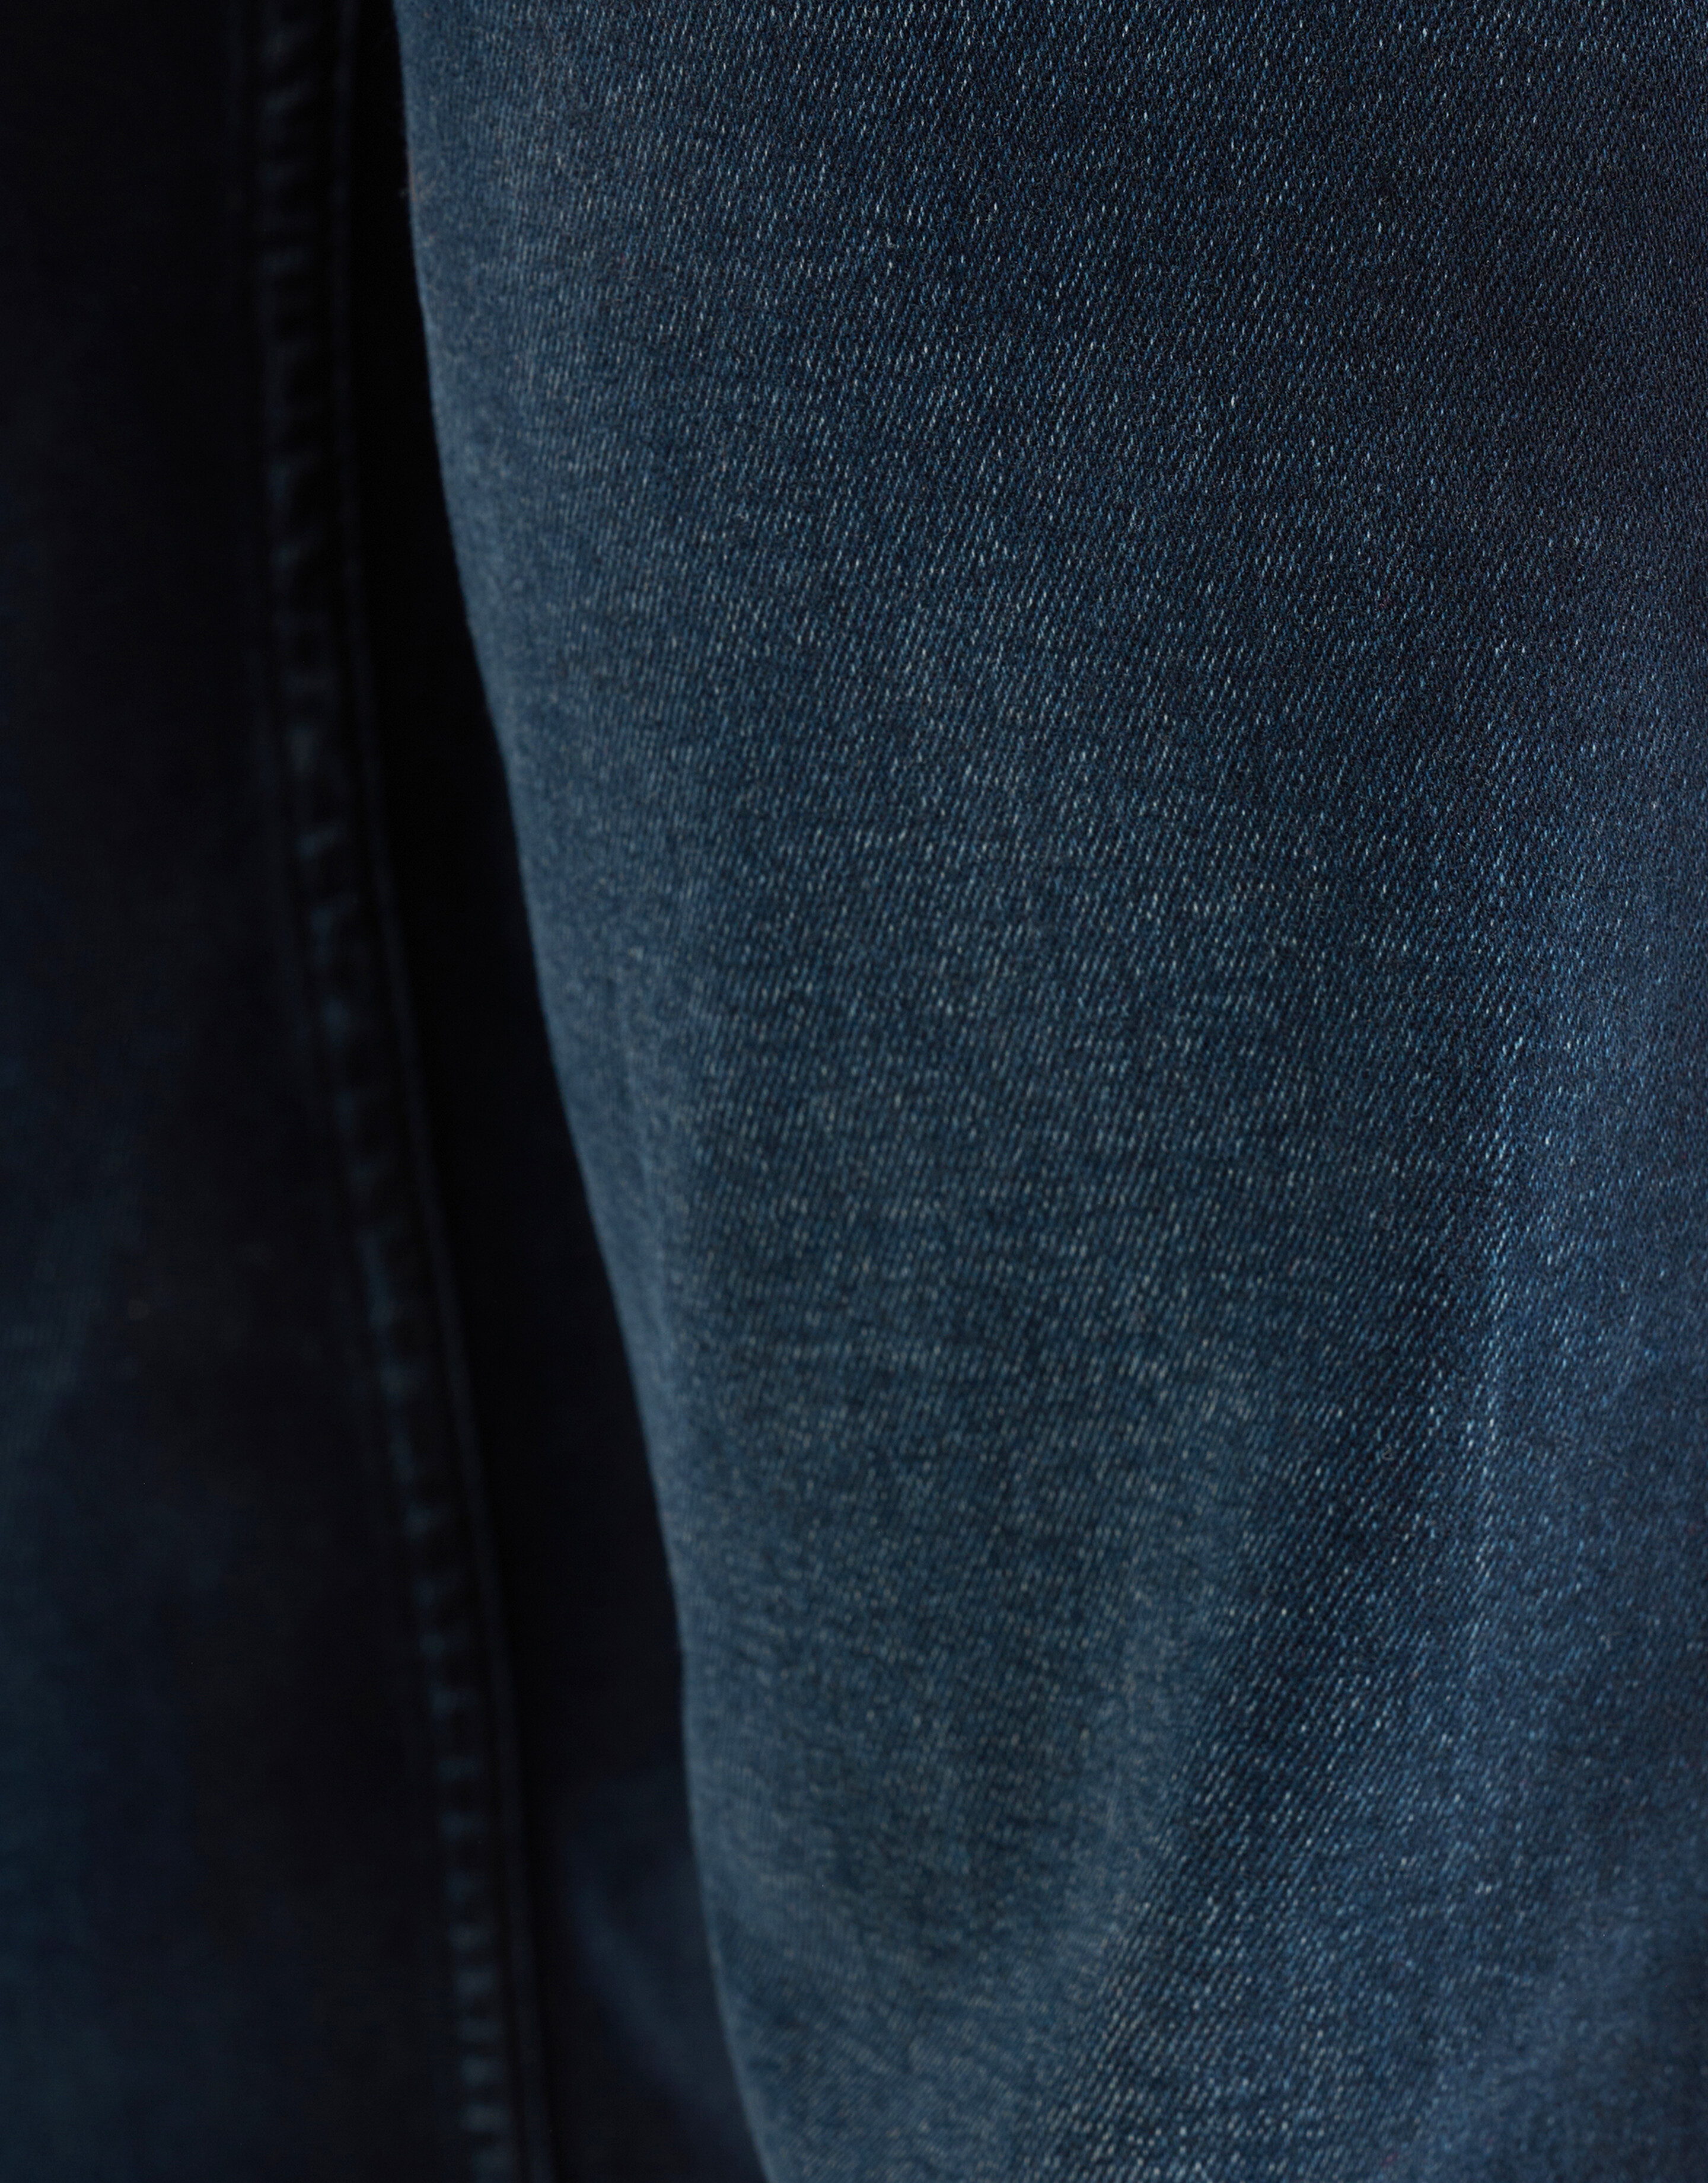 Straight Fit Jeans Blauw/Zwart L34 Refill